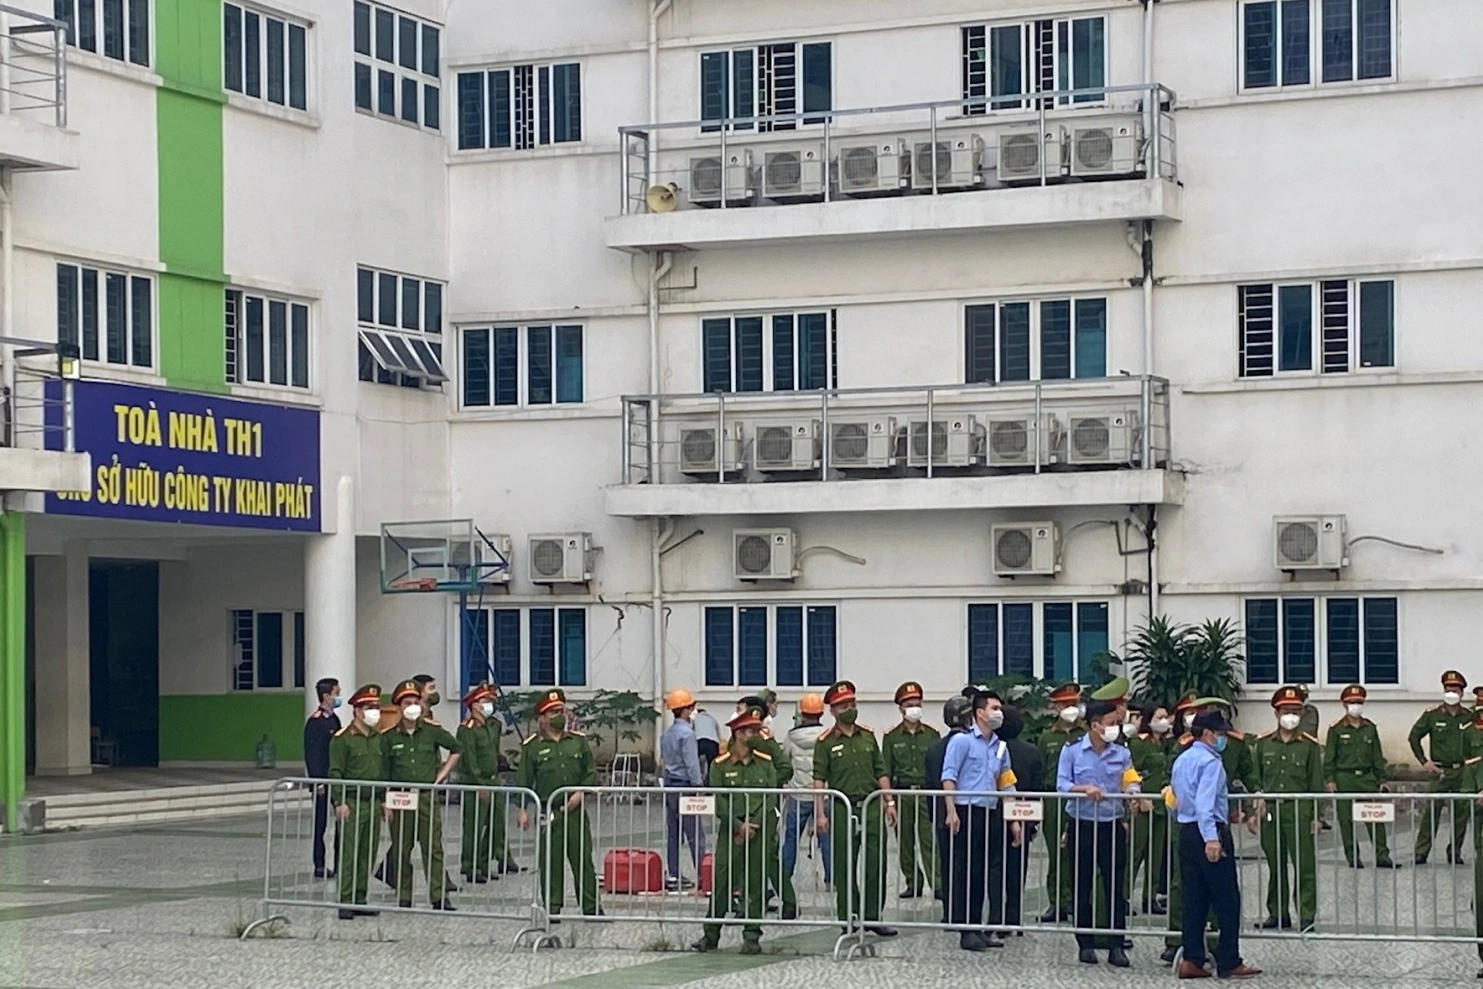 Tổng cục Thi hành án dân sự rà soát vụ việc tranh chấp trường học ở Hà Nội - 2